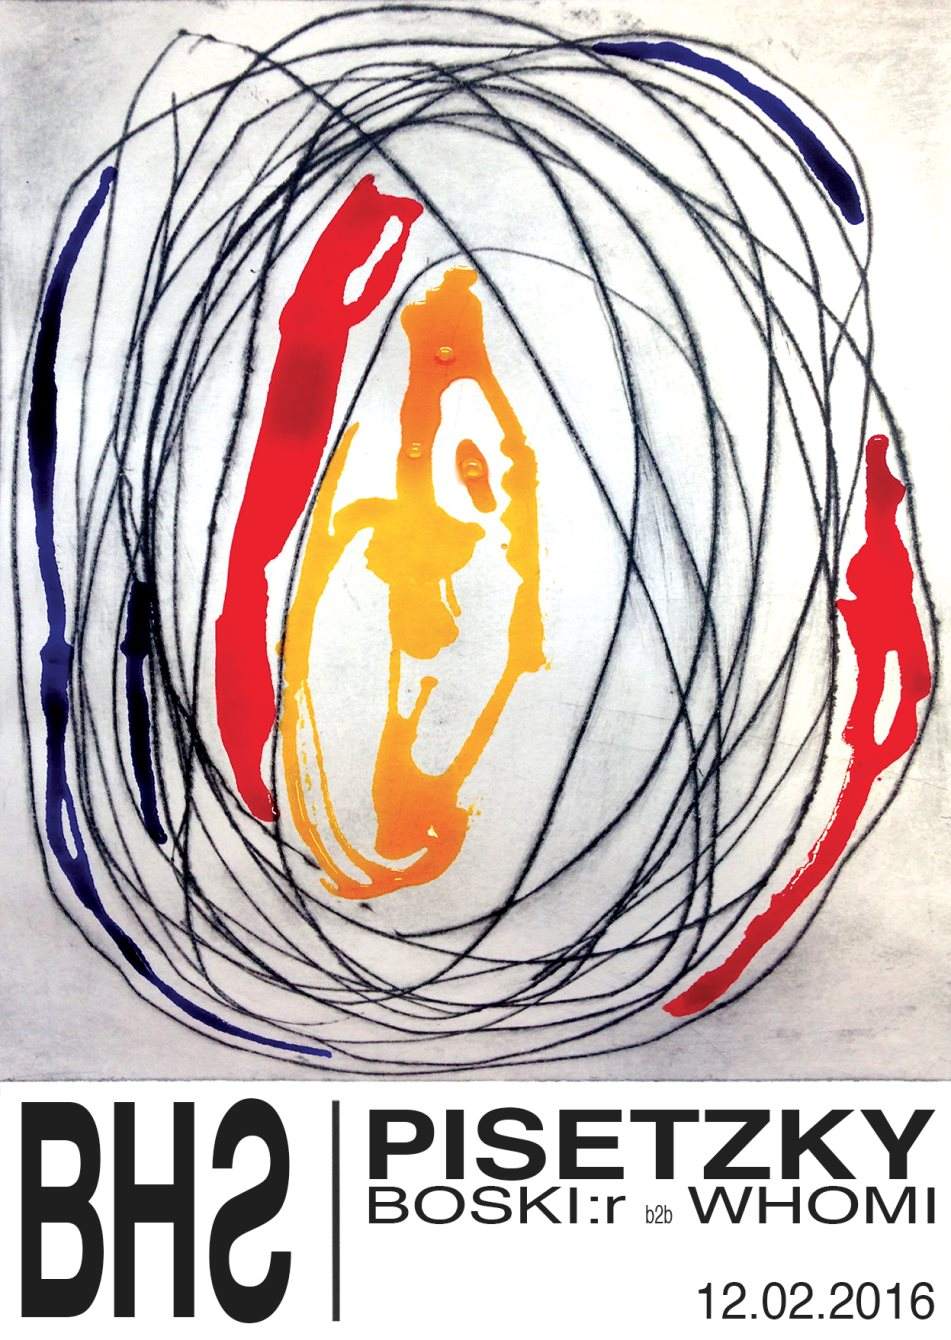 Bauhaus with Pisetzky & Boski:r b2b Whomi - フライヤー裏